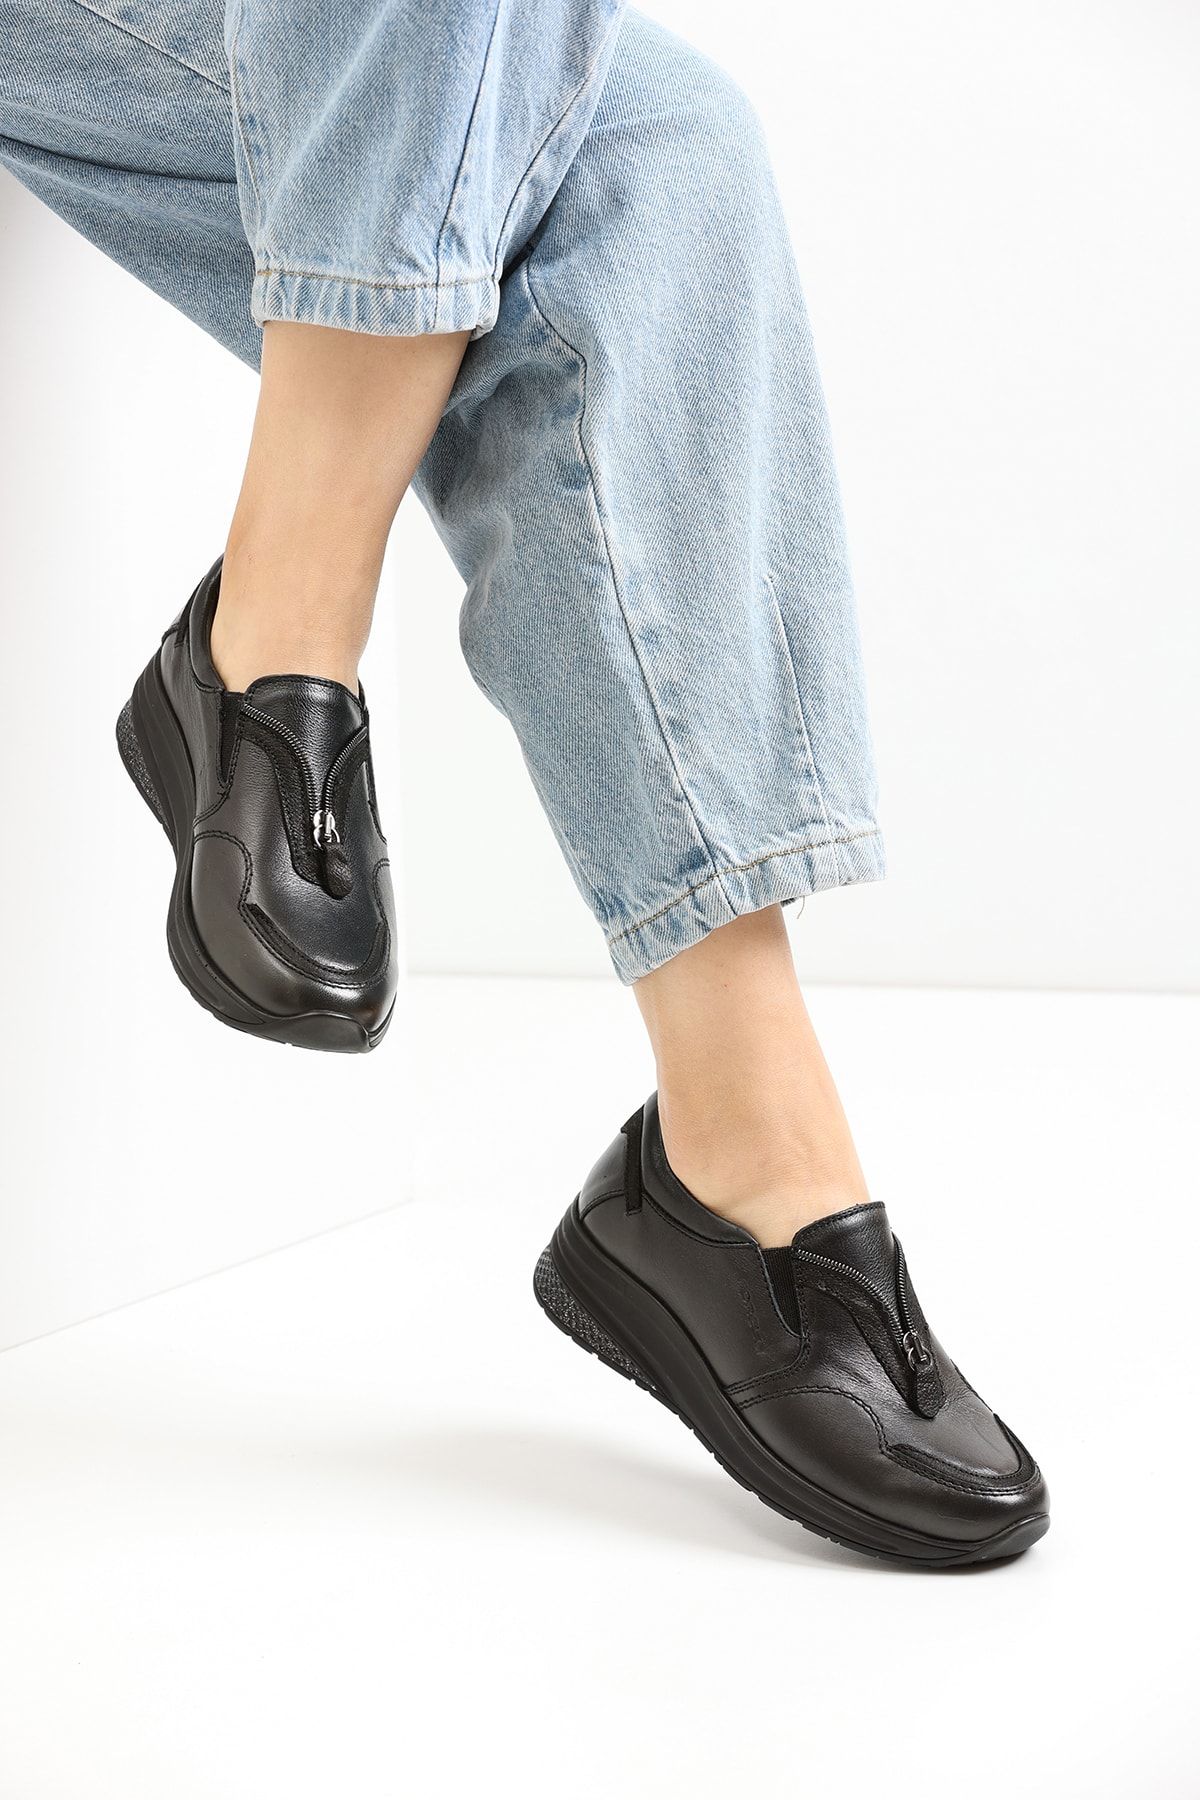 Forelli Teta-g Comfort Kadın Ayakkabı Siyah